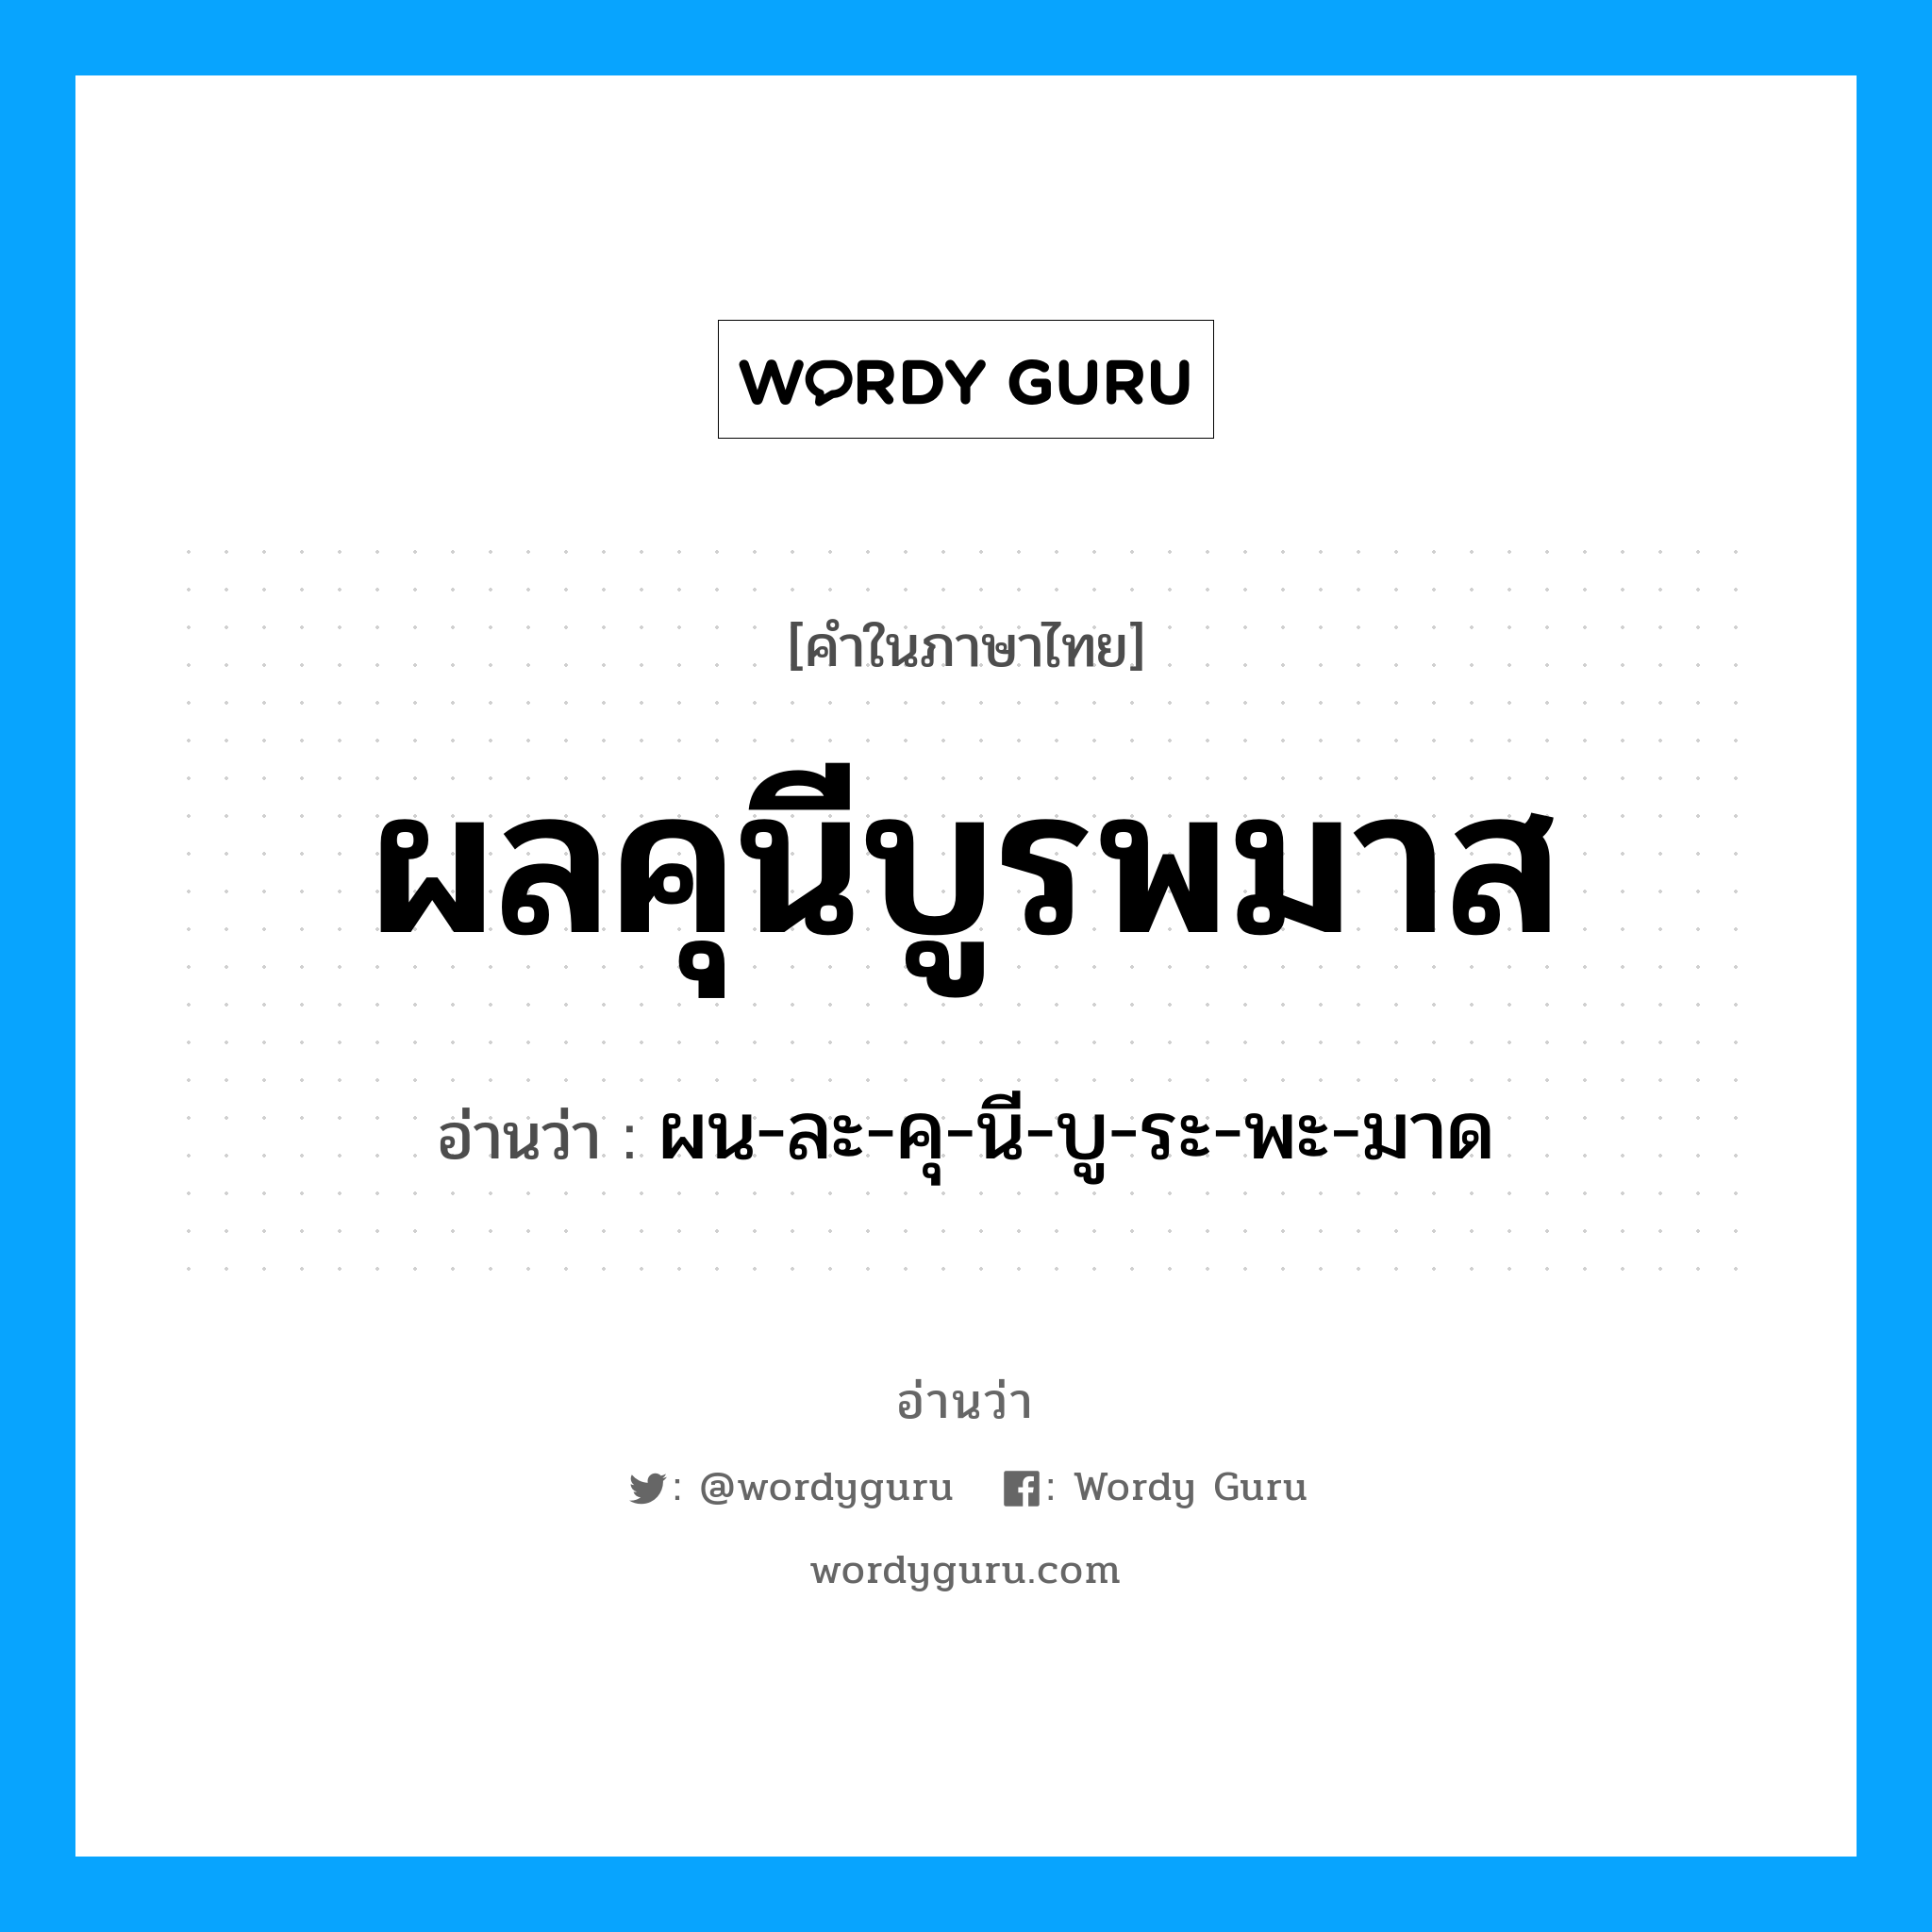 ผลคุนีบูรพมาส อ่านว่า?, คำในภาษาไทย ผลคุนีบูรพมาส อ่านว่า ผน-ละ-คุ-นี-บู-ระ-พะ-มาด